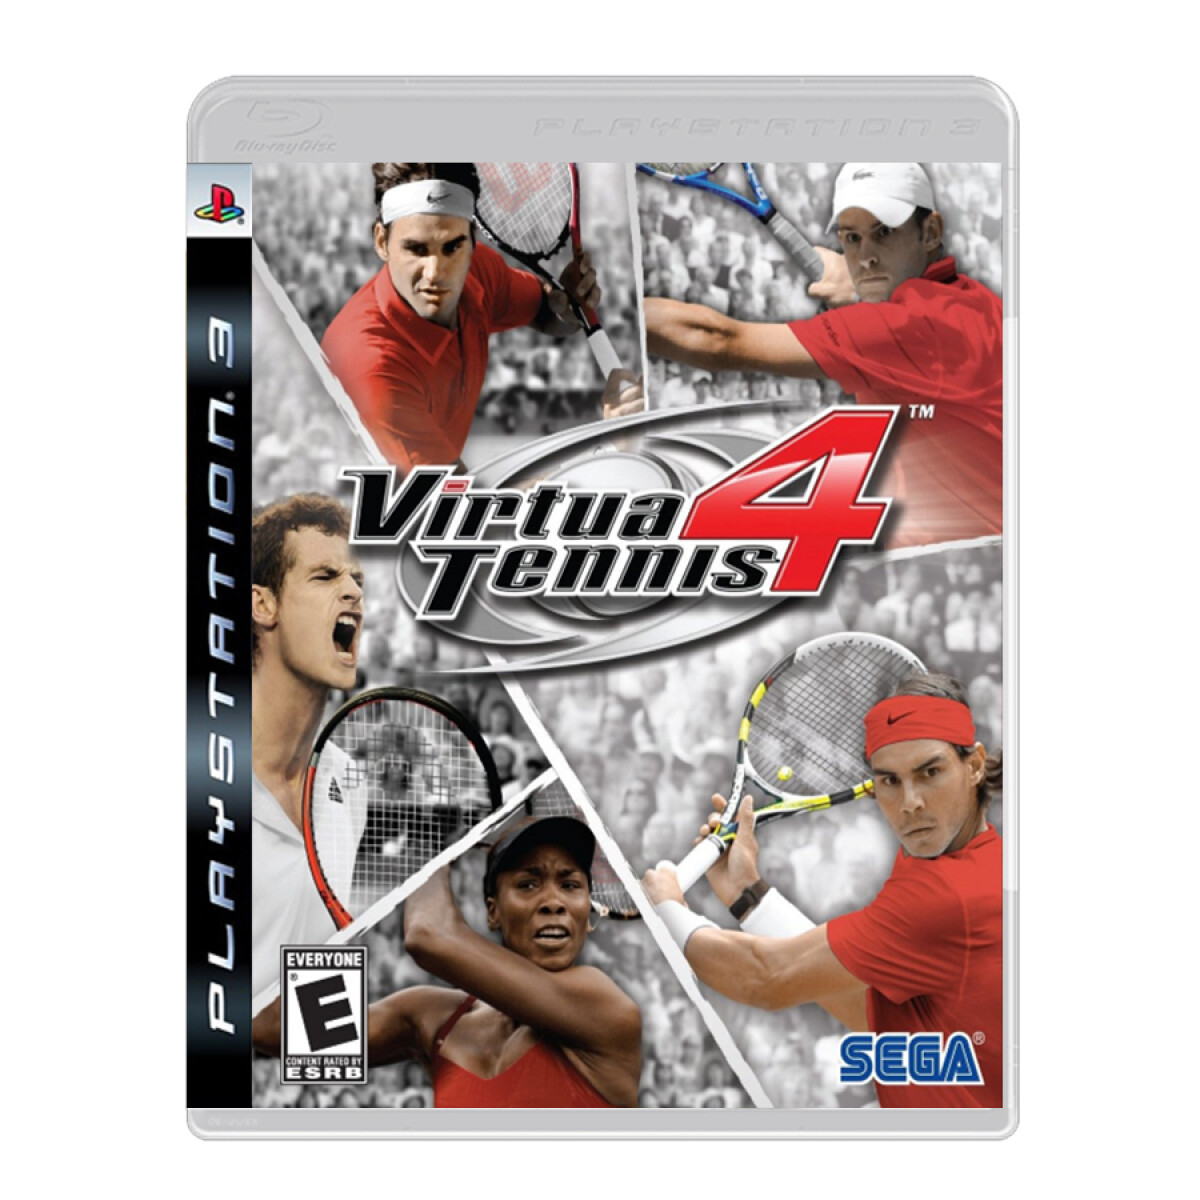 Virtua Tennis 4 